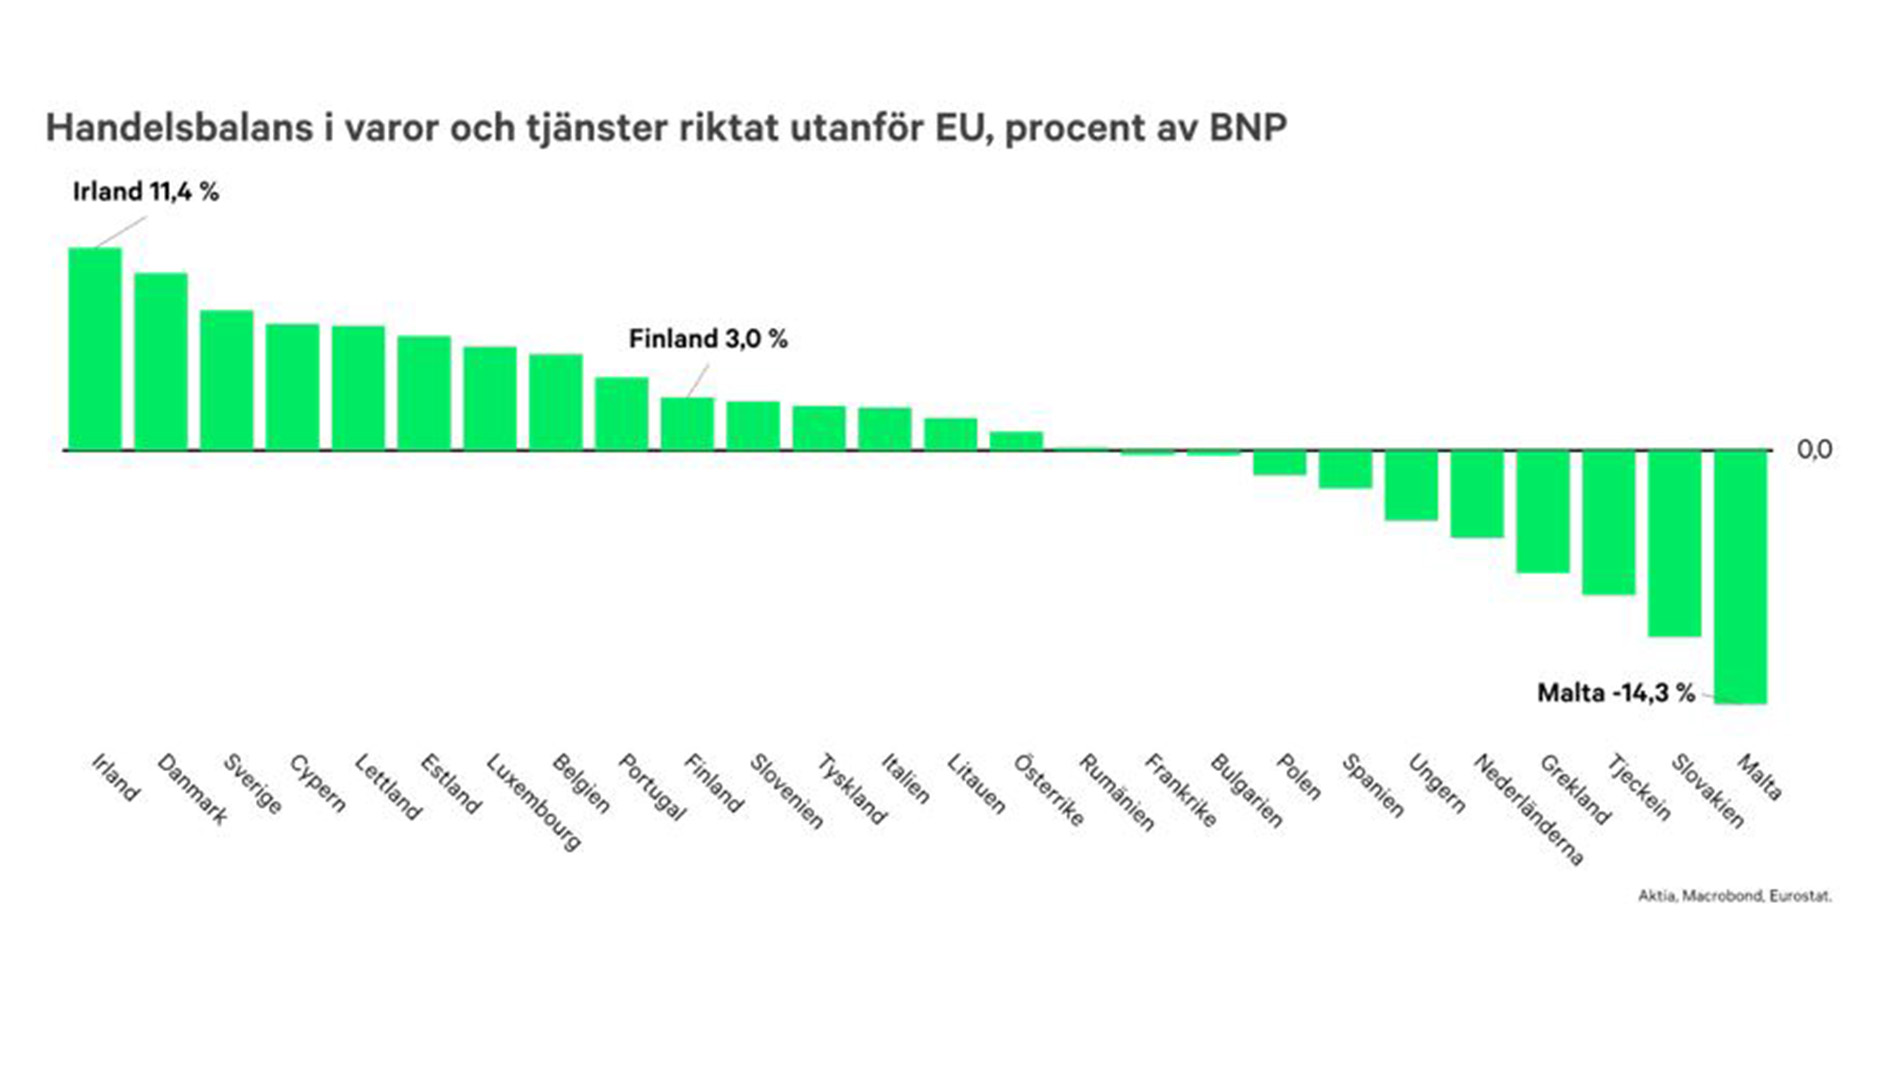 Handelsbalans i varor och tjänster riktat utanför EU, procent av BNP